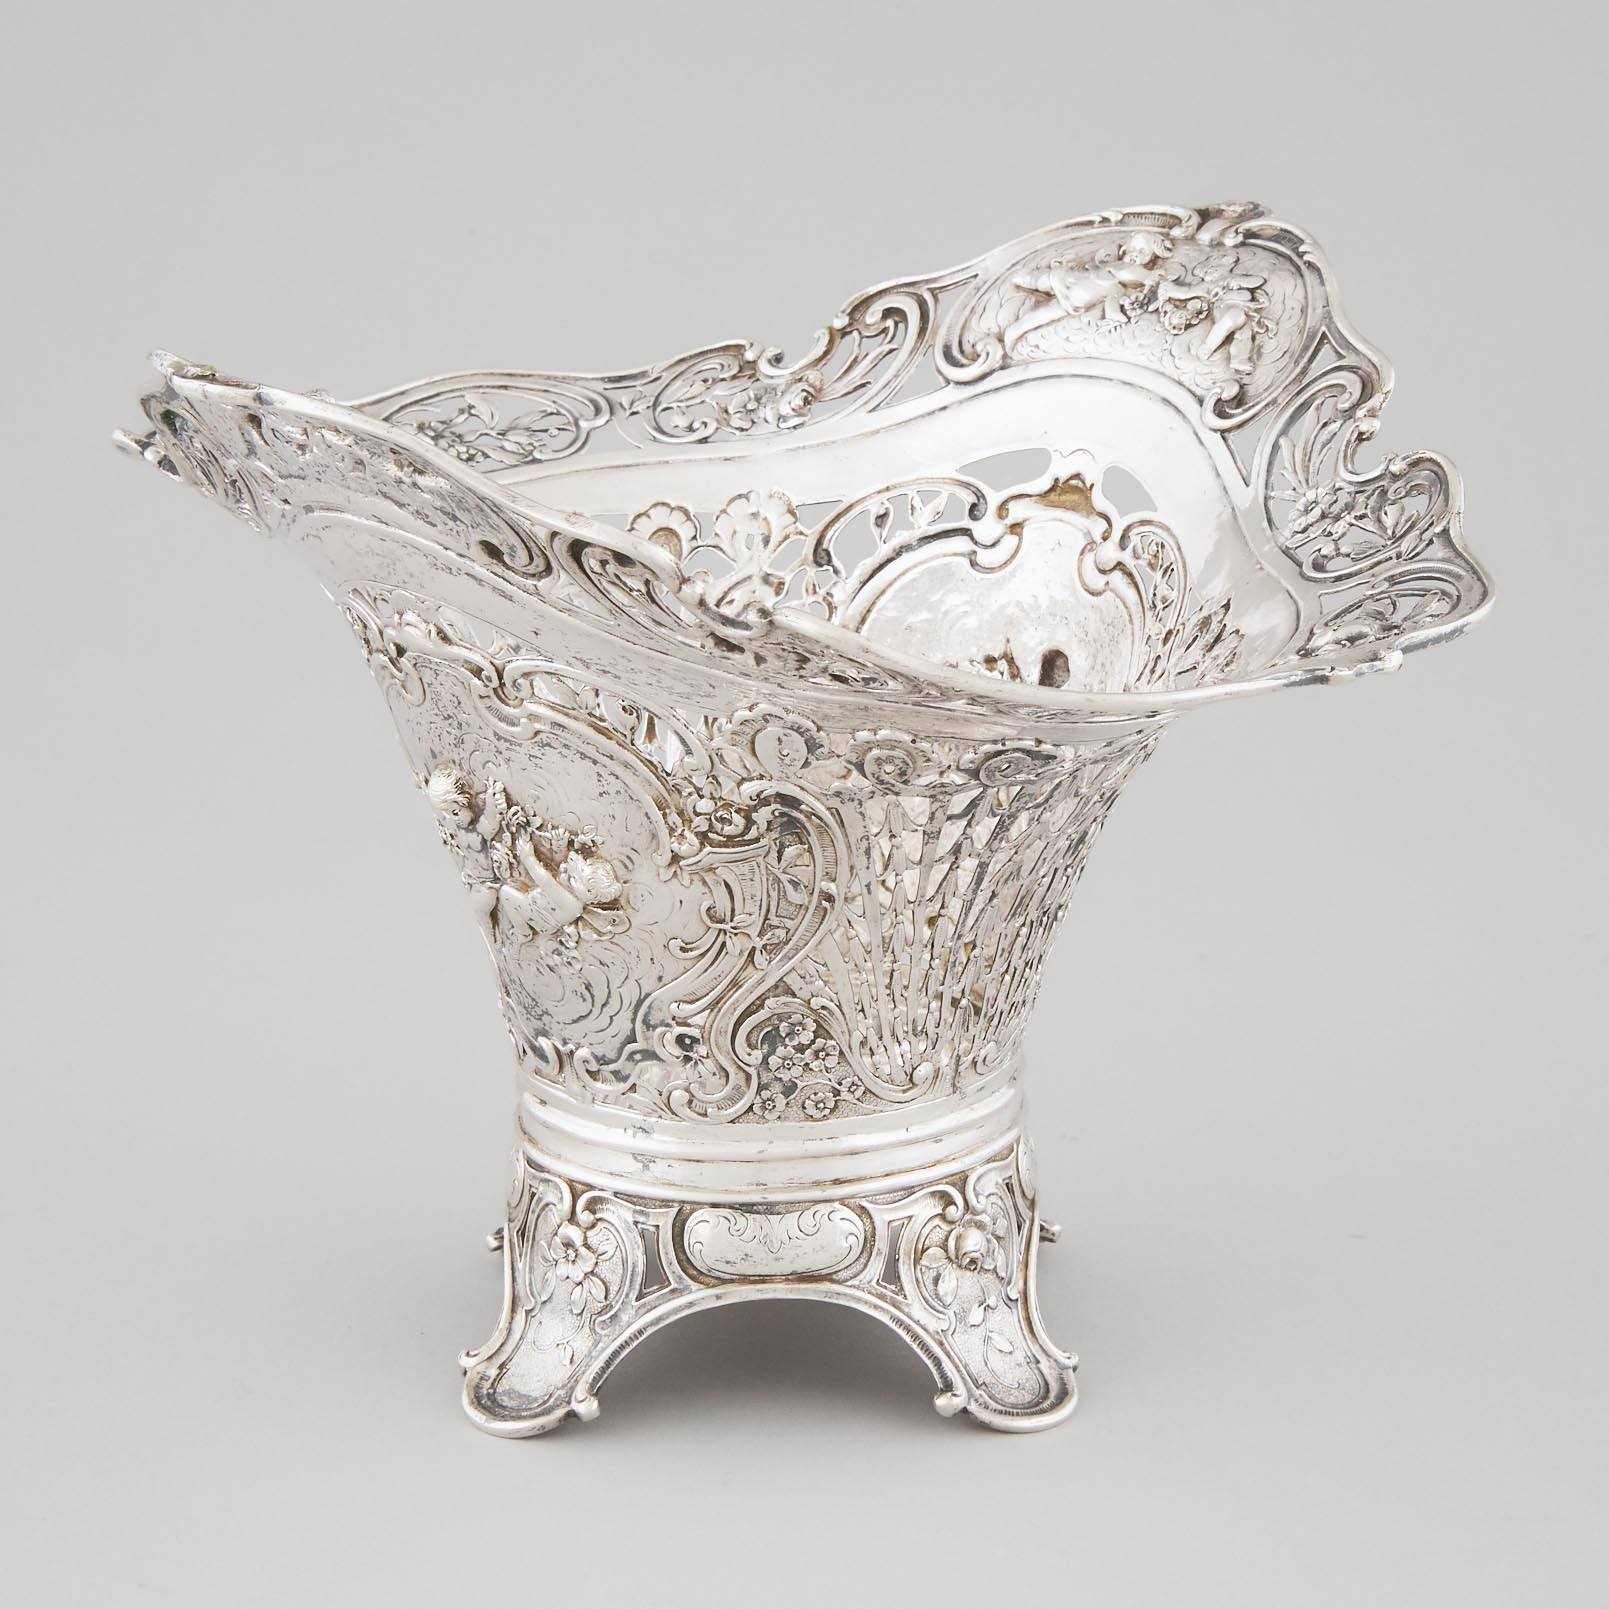 German Silver Pierced Vase, Georg Roth & Co., Hanau, c.1900